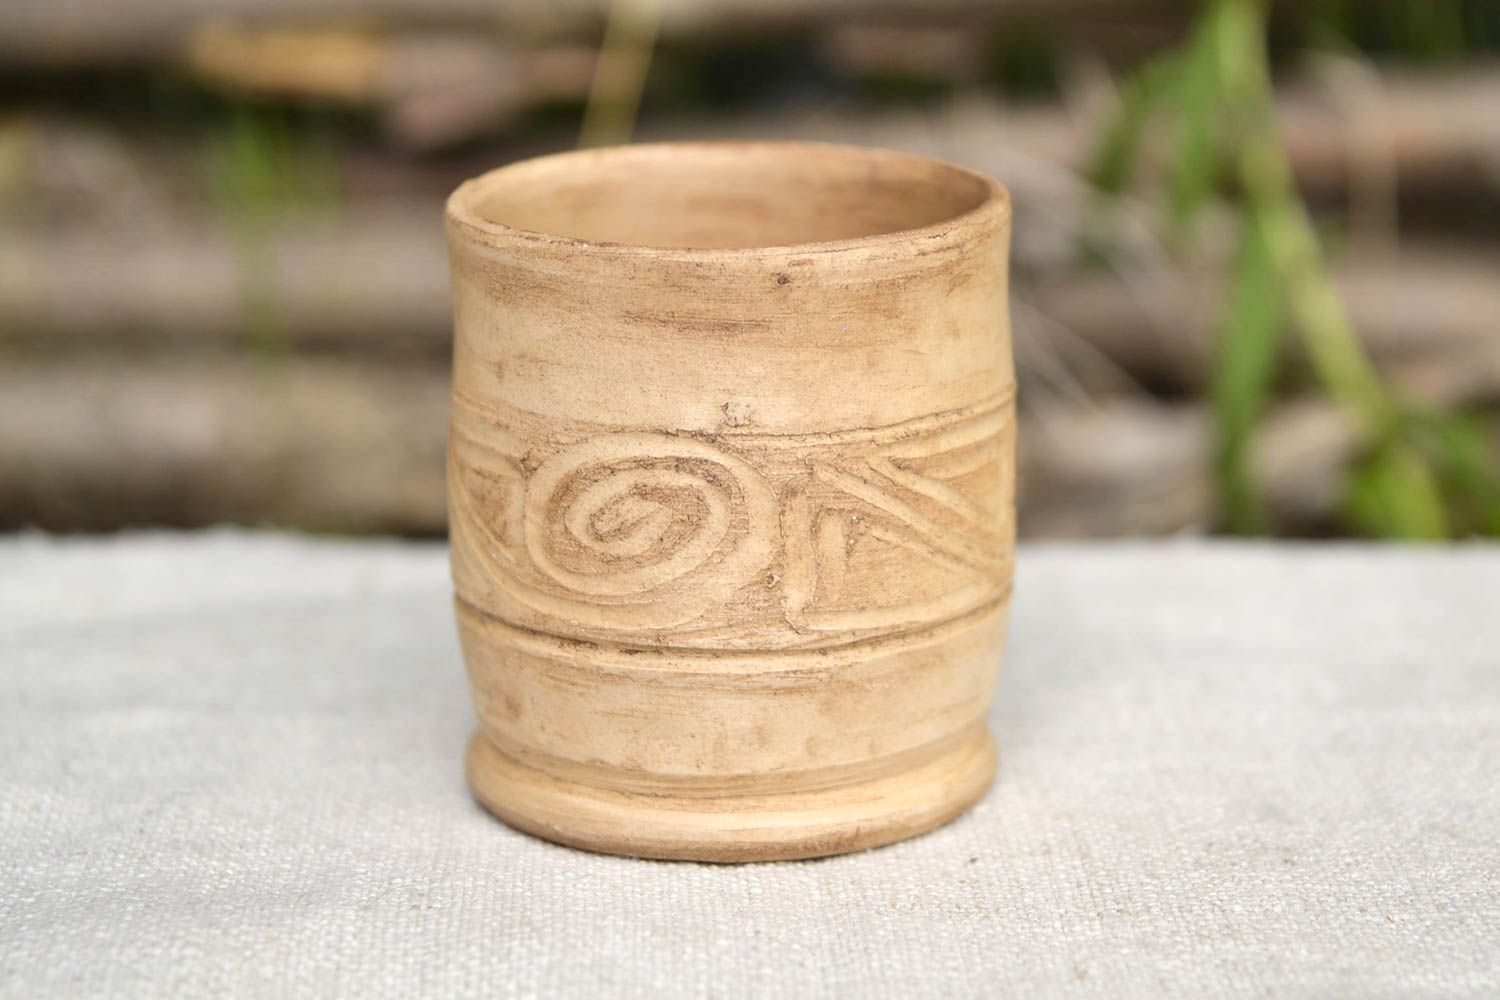 Vaso de chupito hecho a mano regalo original vasija de cerámica para tomar vodka foto 1